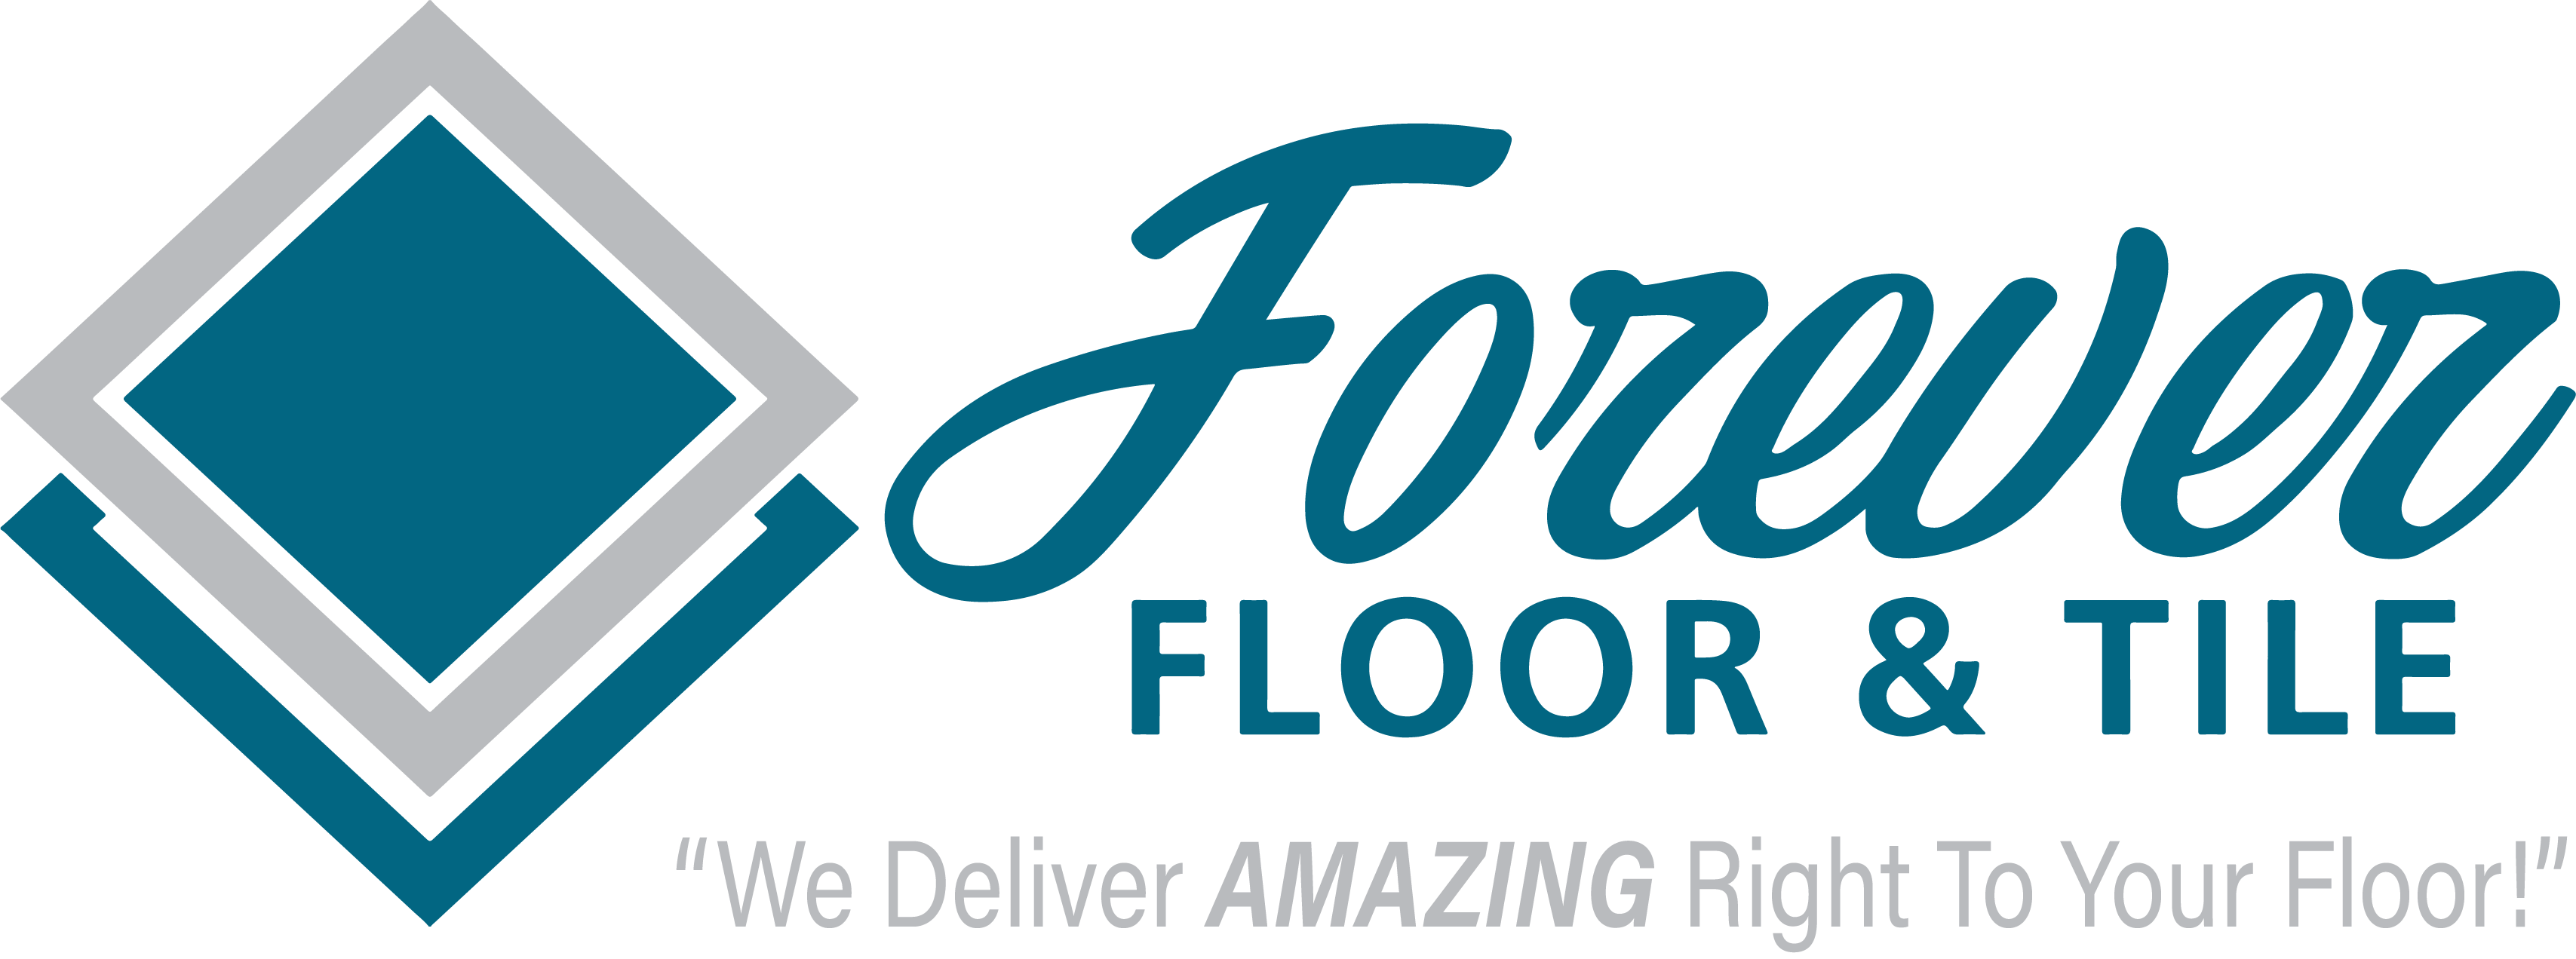 Forever Floor & Tile